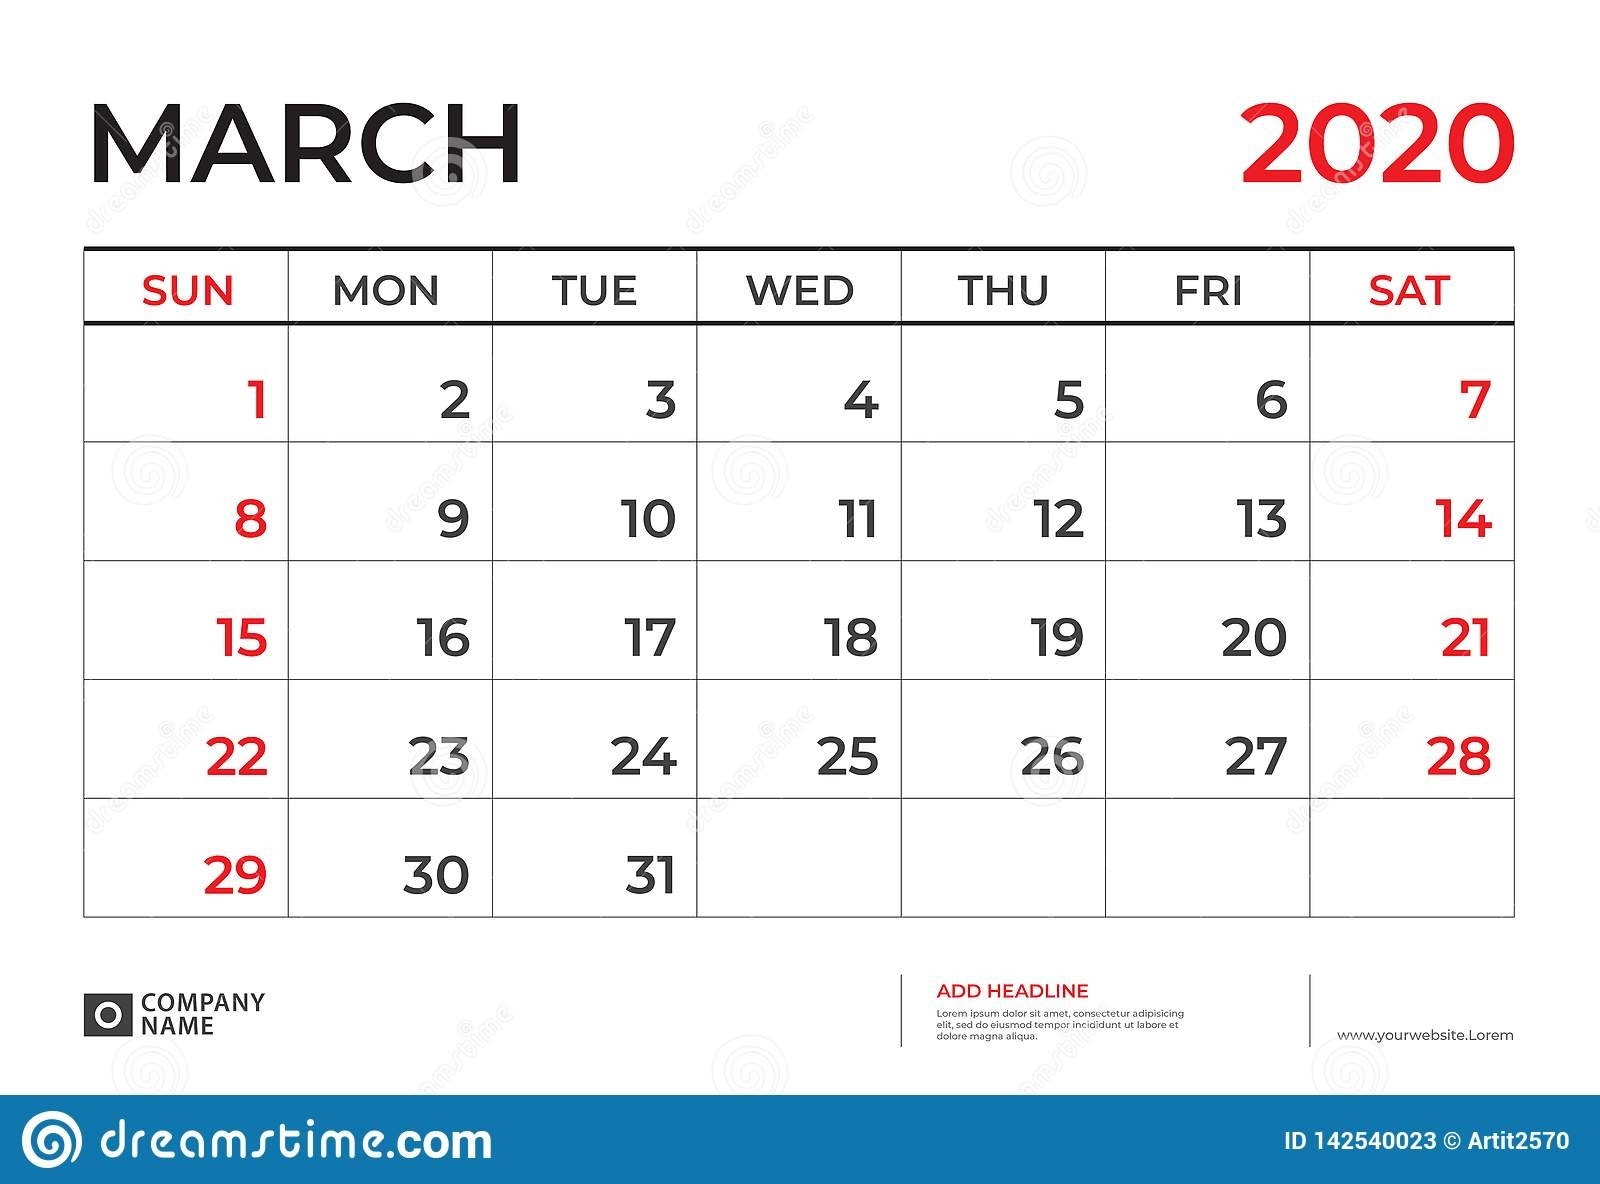 March 2020 Calendar Template, Desk Calendar Layout Size 9.5